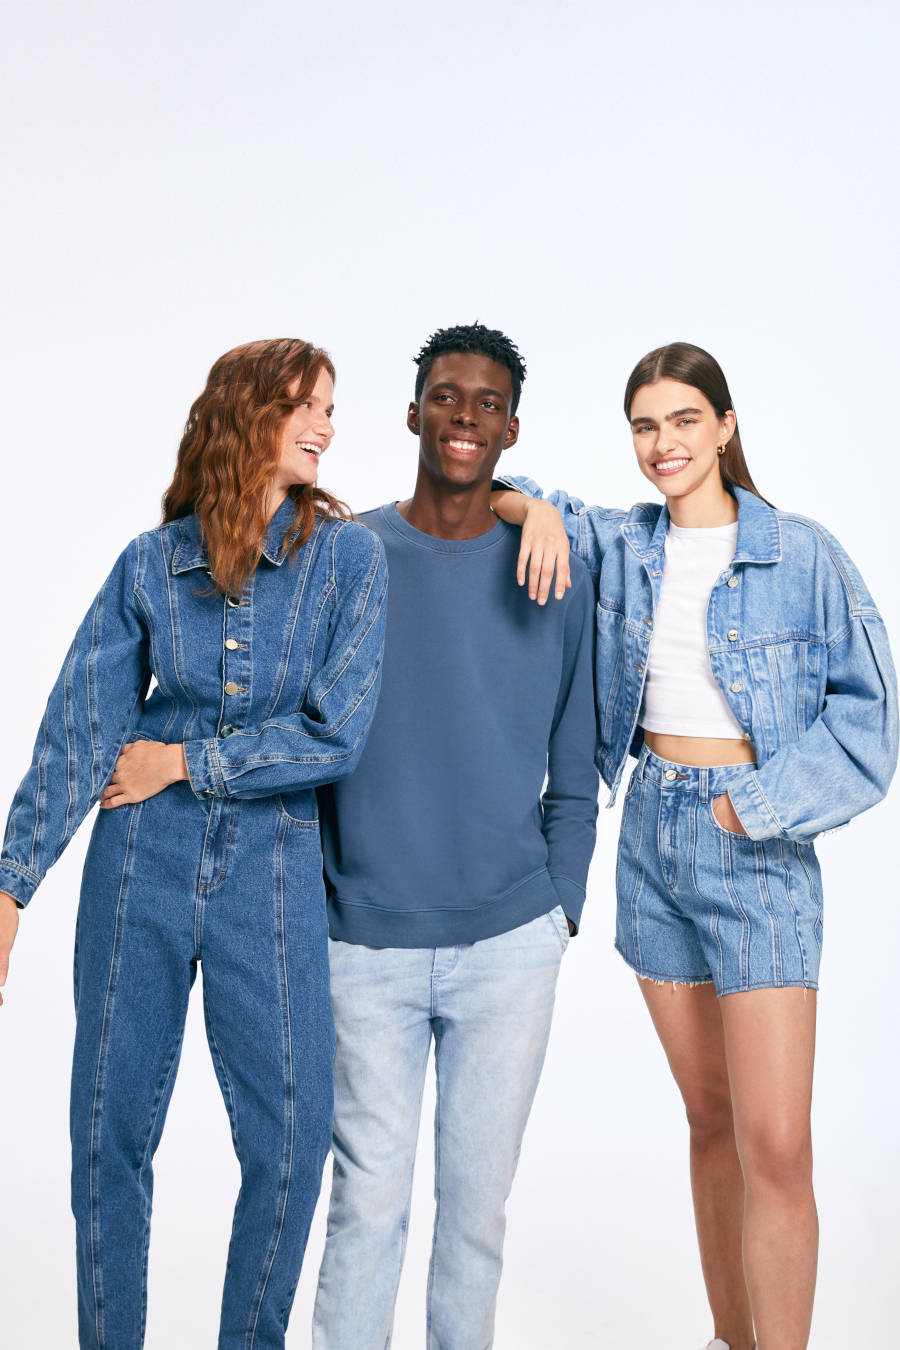 Imagem com três pessoas, duas mulheres, uma vestindo macacão jeans e outra short e jaquetas jeans e um homem vestindo calça jeans e blusa de manga azul